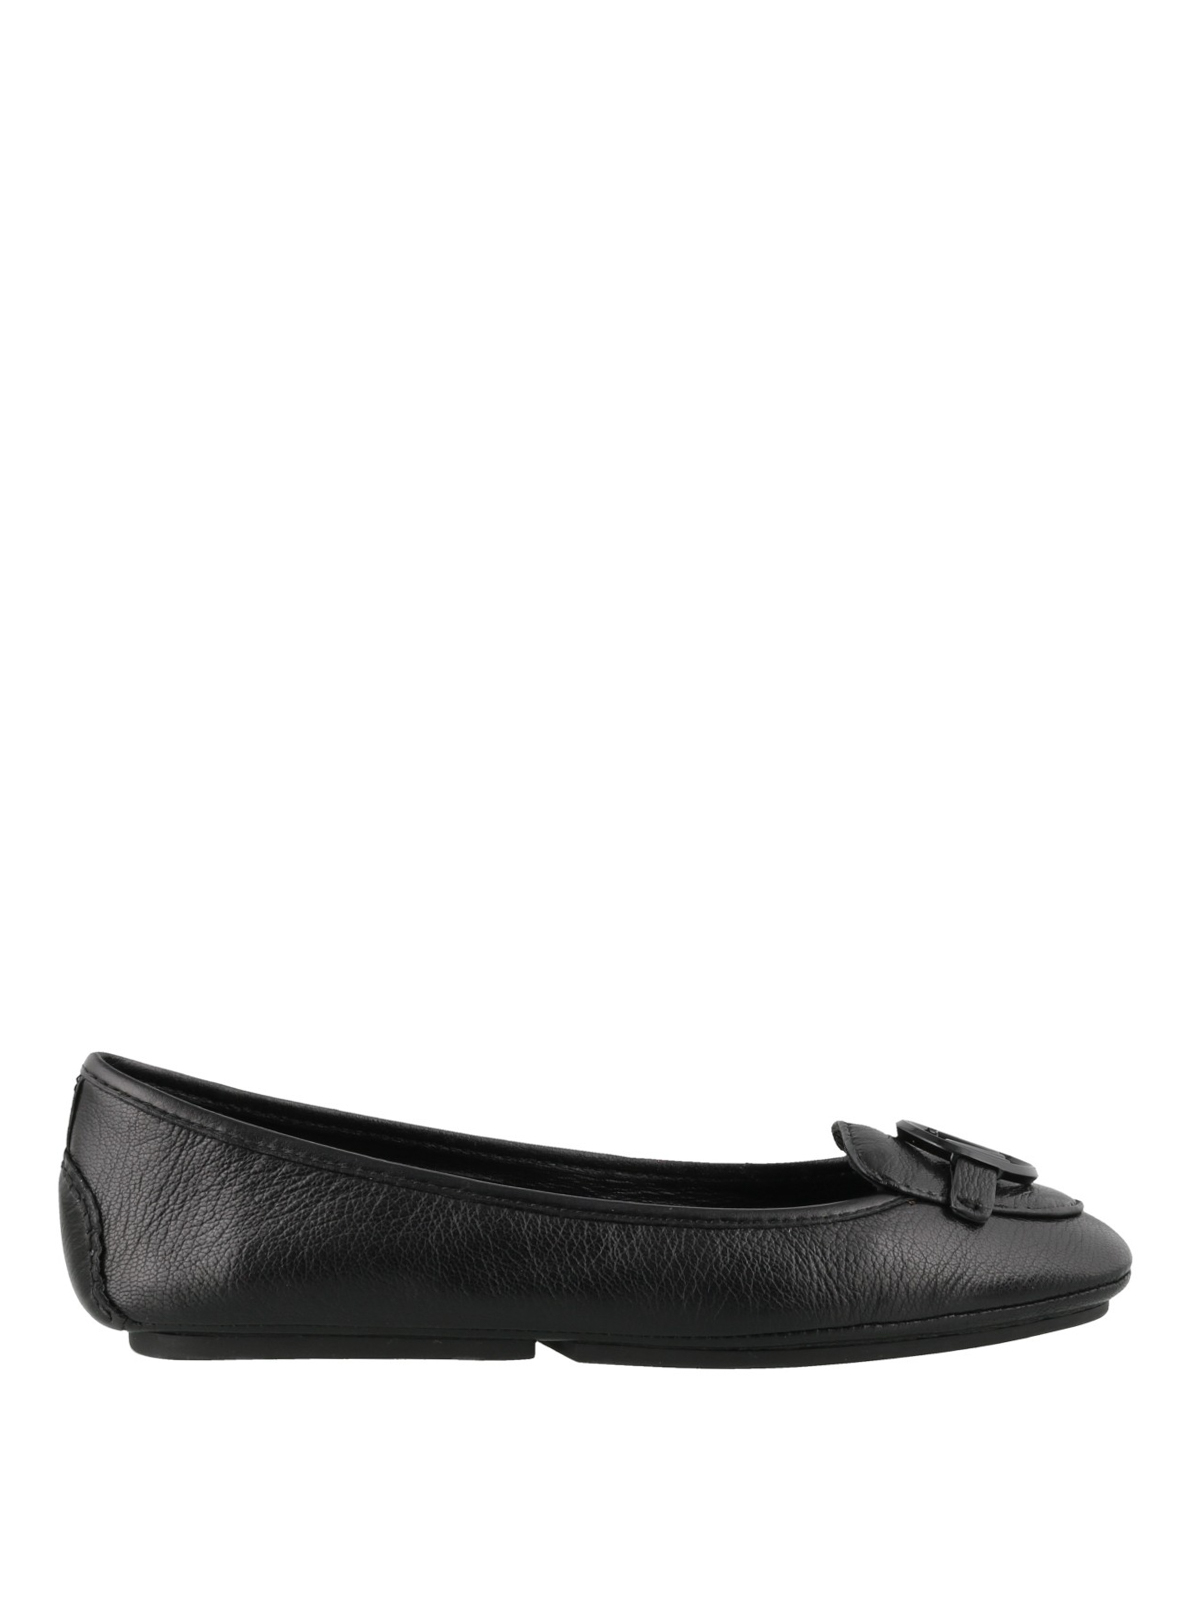 Flat shoes Michael Kors - Lillie leather flats - 40R9LIFP4L001 | iKRIX.com